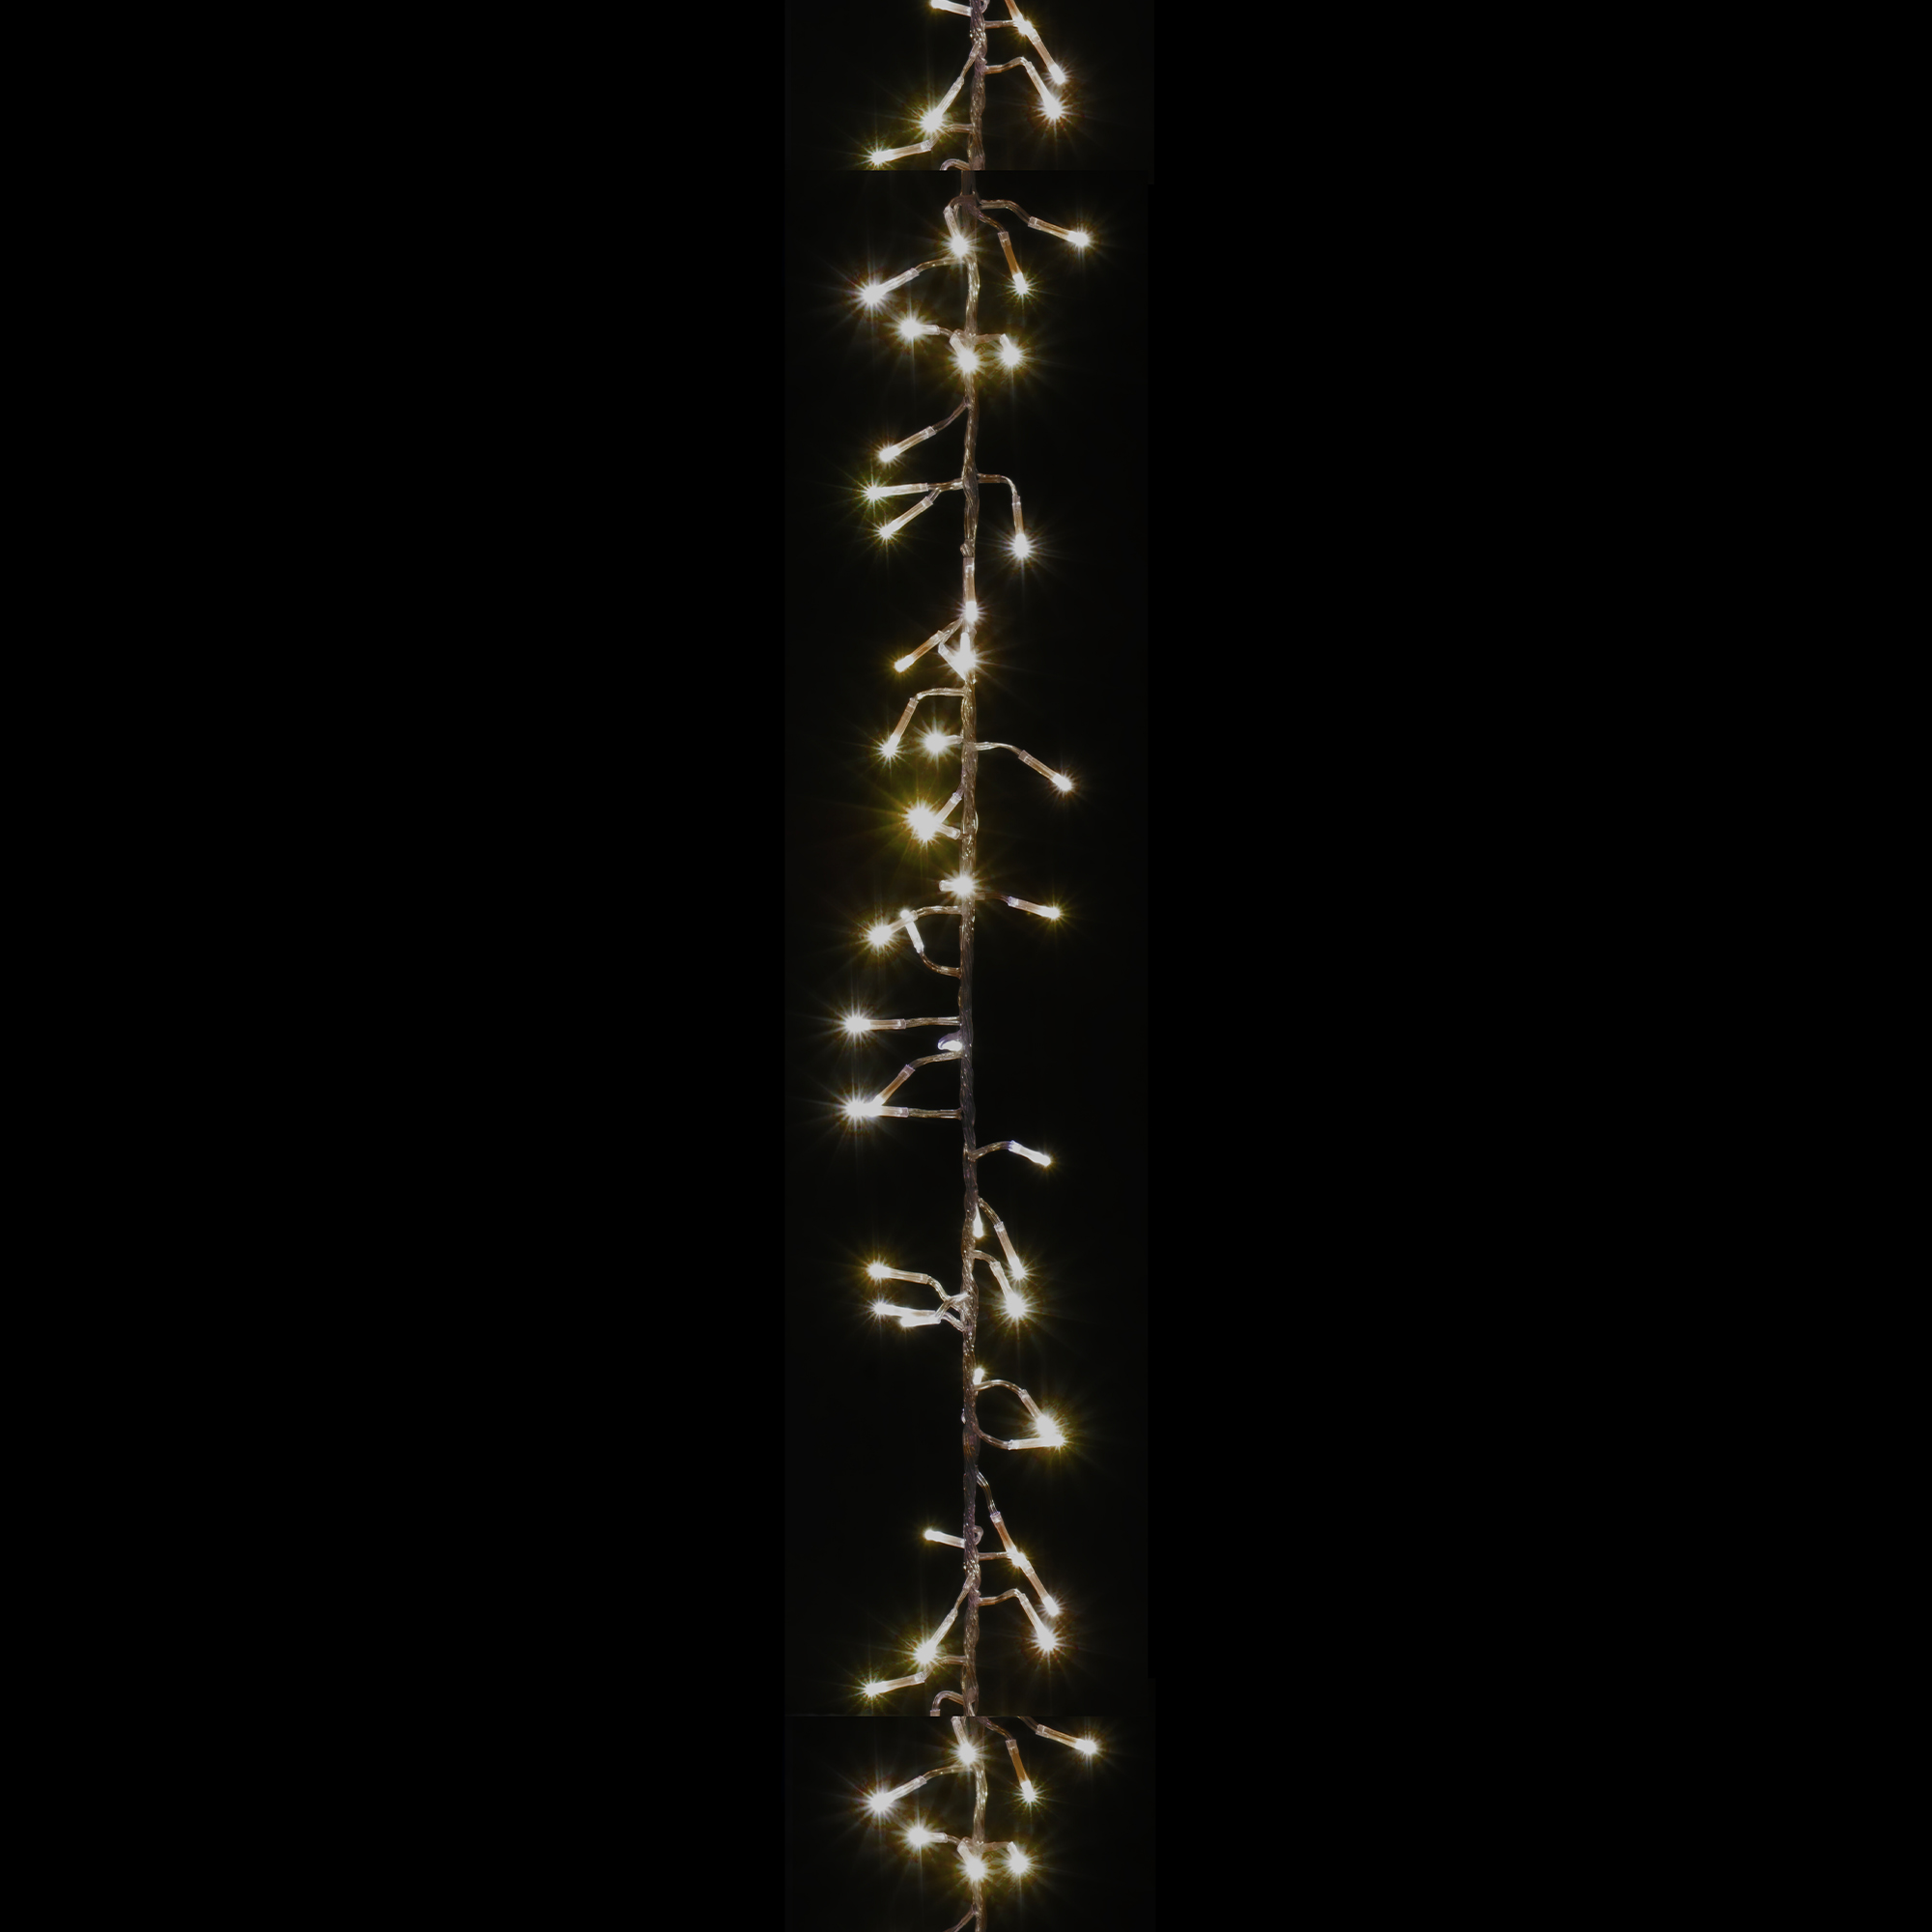 LED Cluster Light String 9ft - Warm White